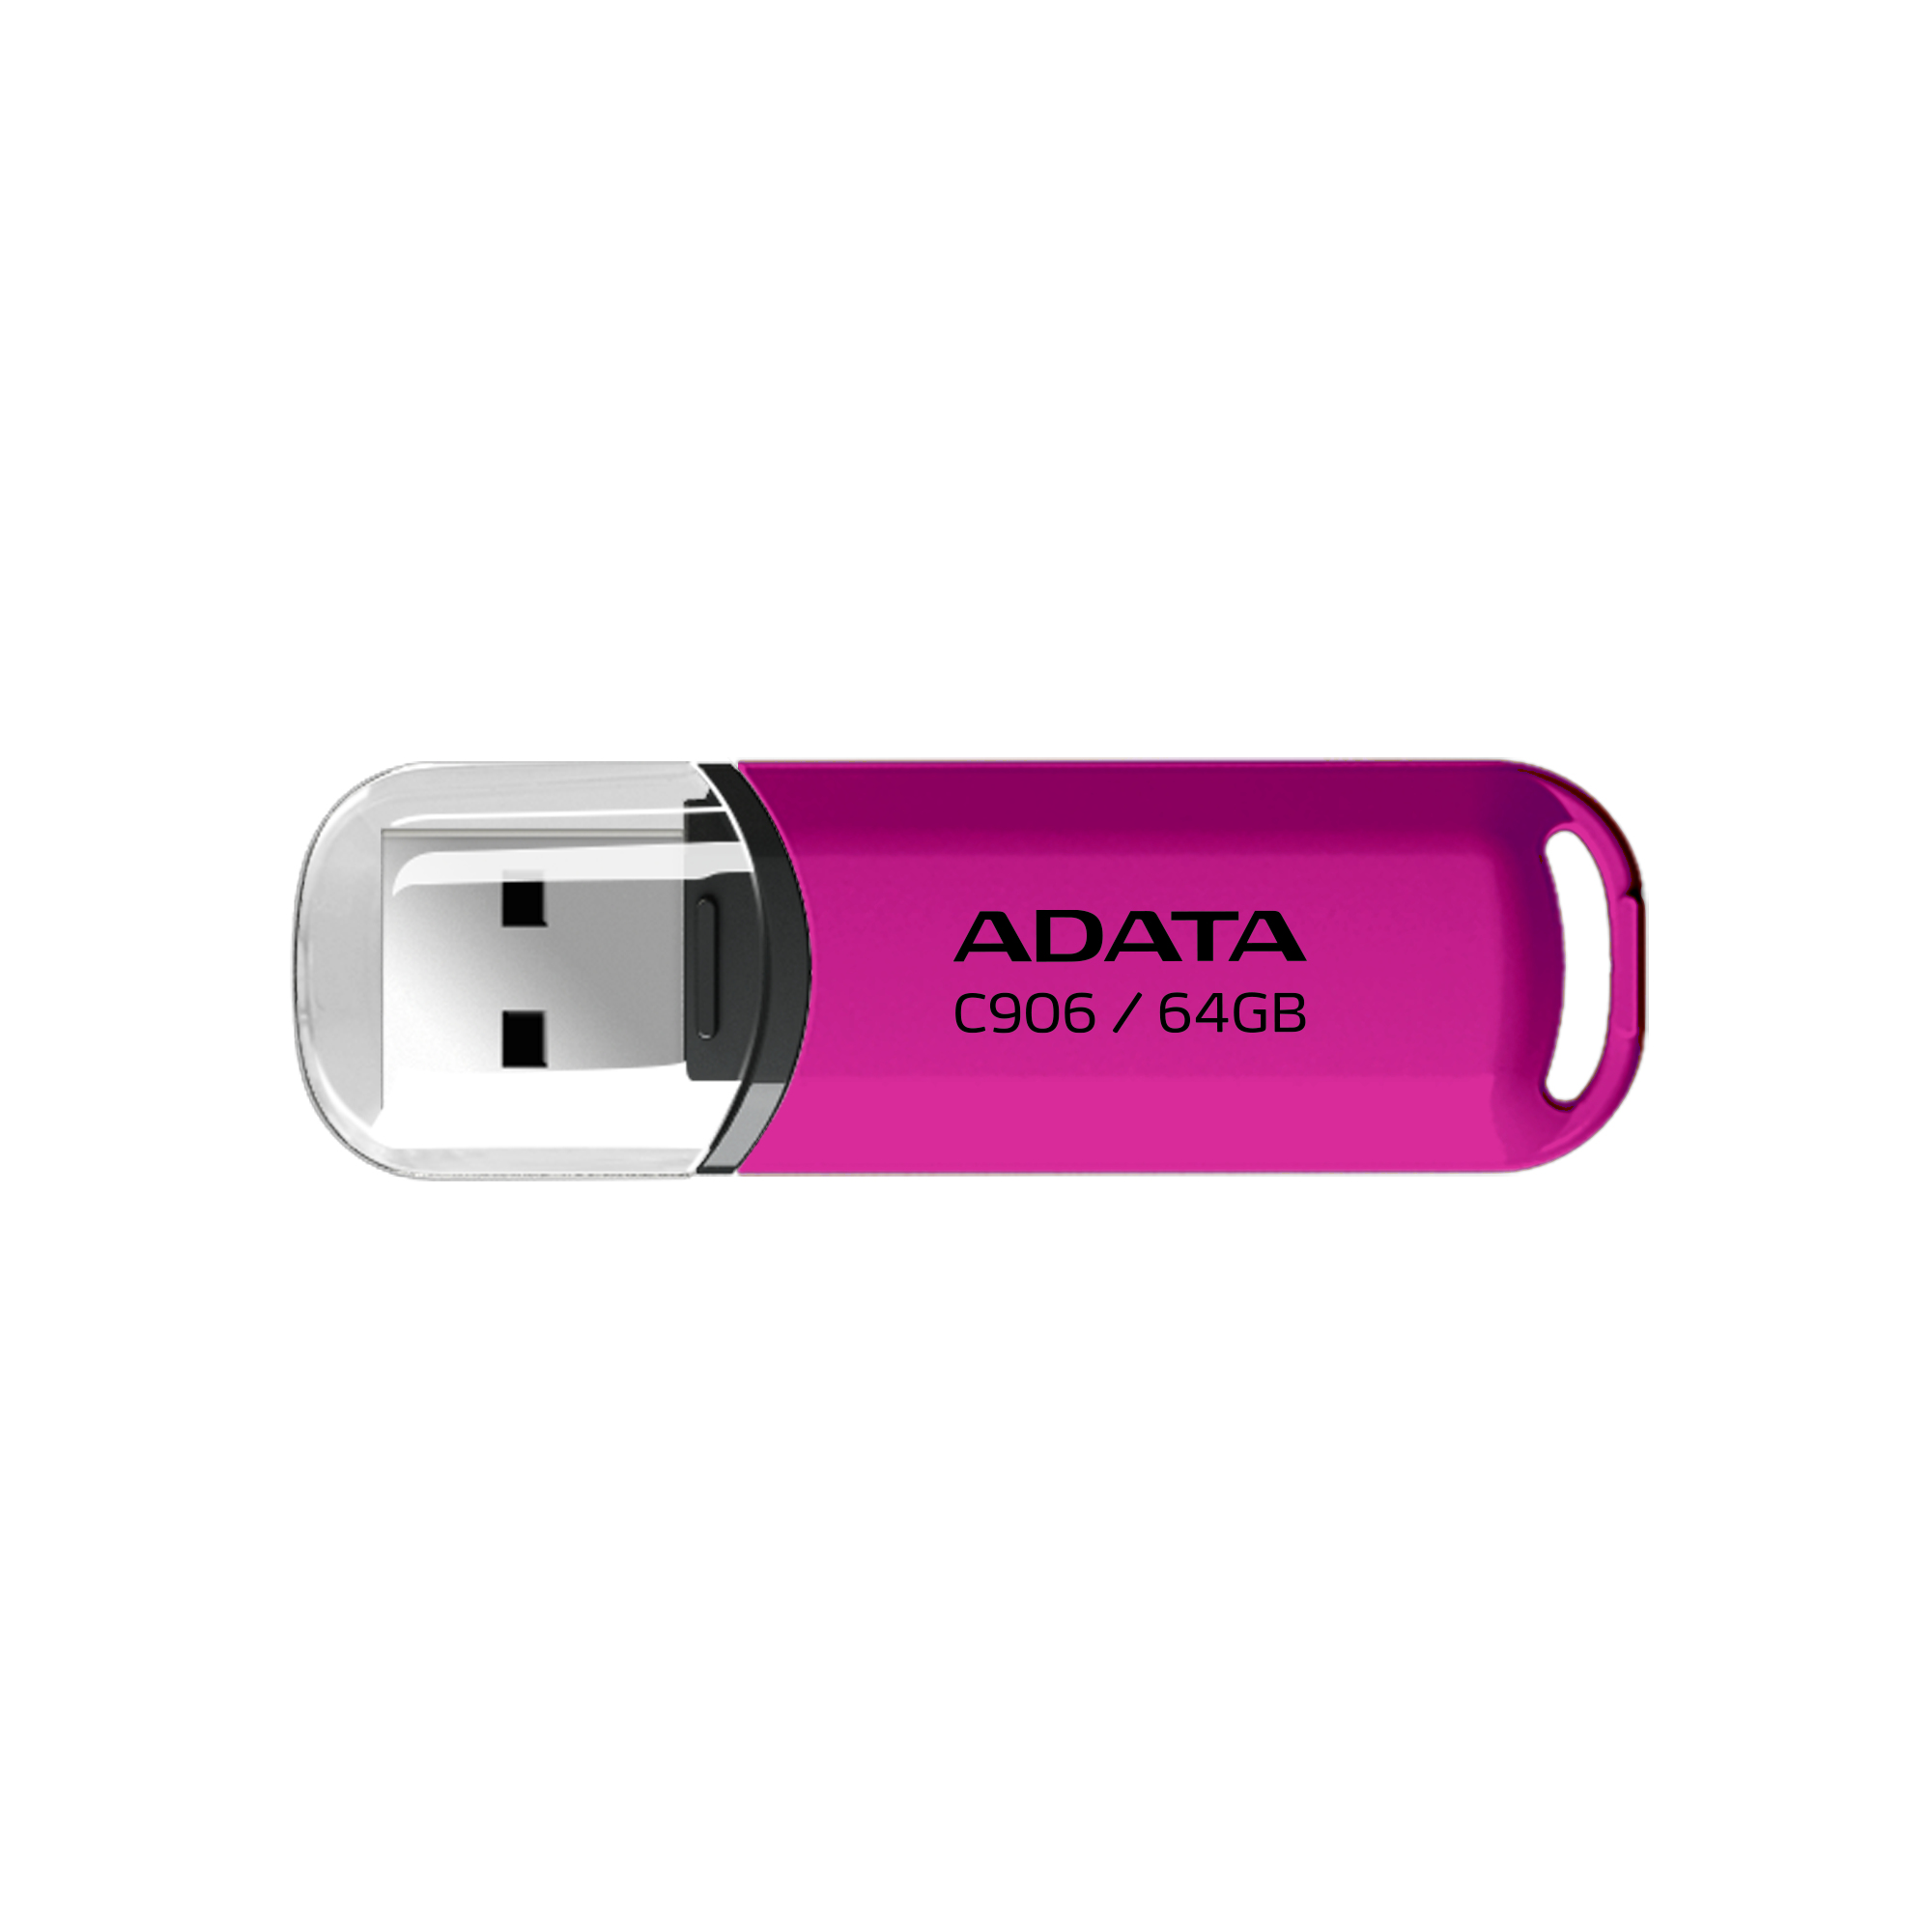 Memoria USB ADATA C906 - Rosa